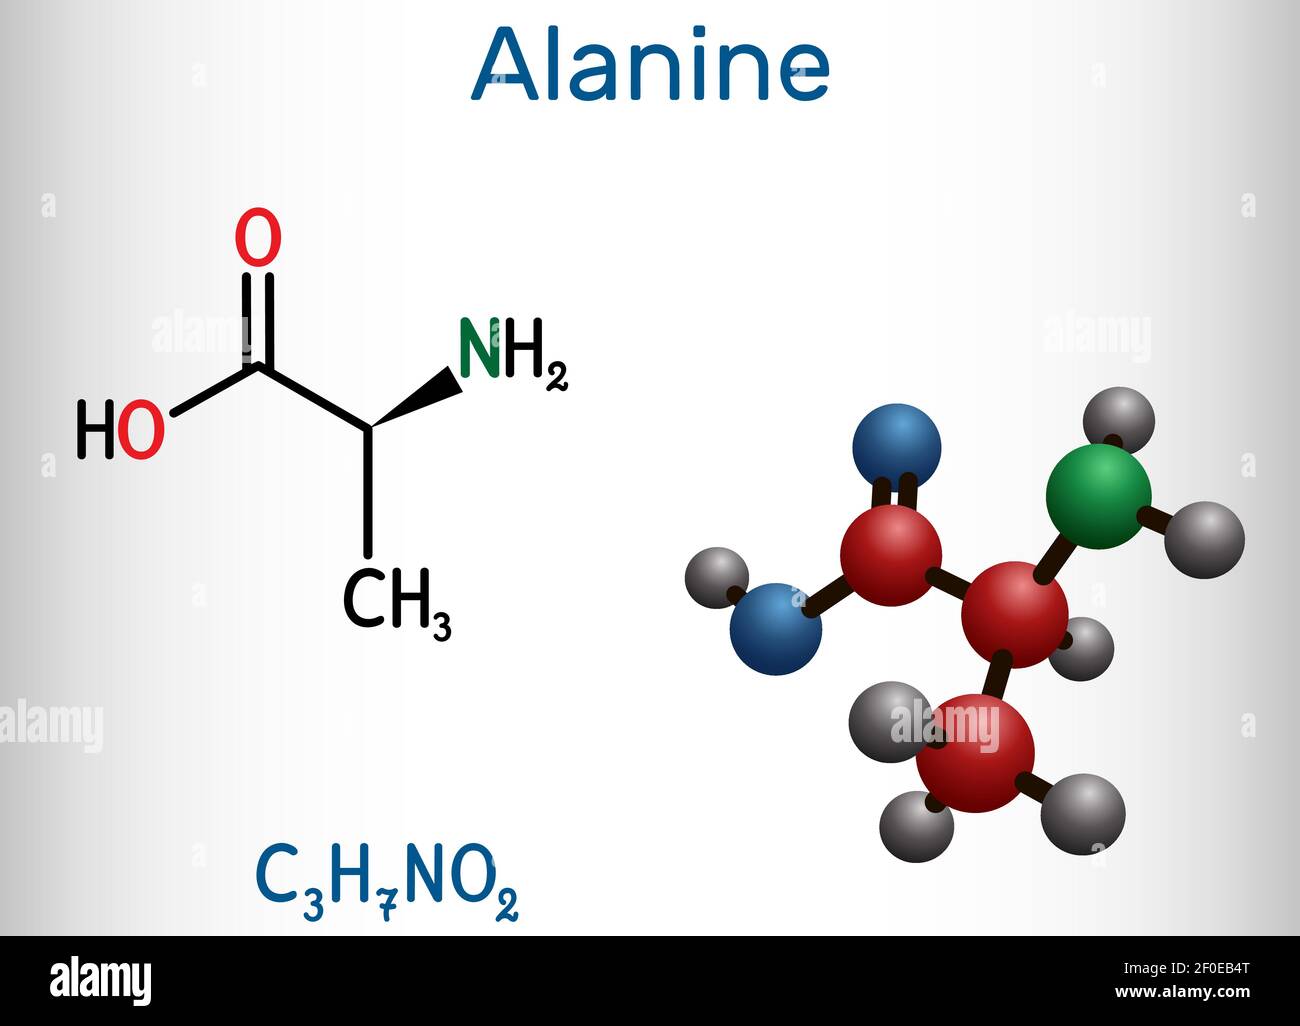 Аланин c2h5oh. Аланин. L-аланин. Аланин формула химическая. Аланин аминокислота.